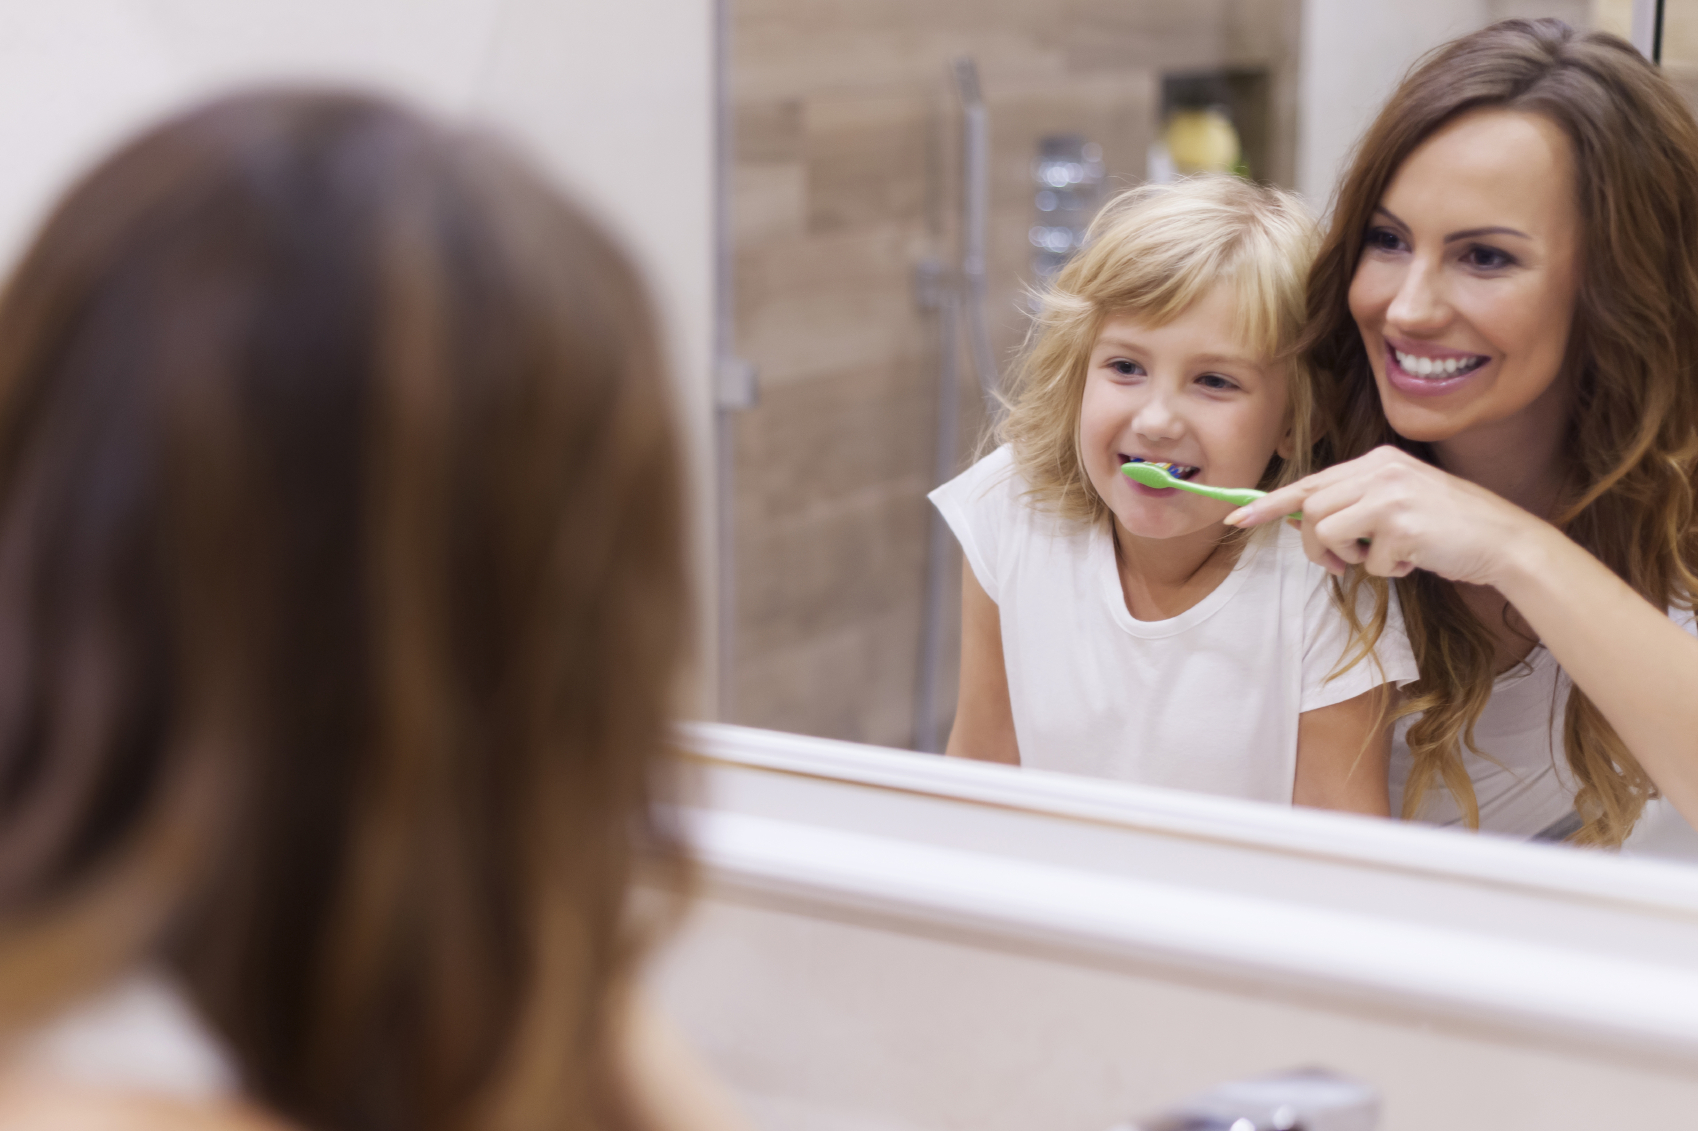 Как научить ребенка чистить зубы в 2 года: советы родителям